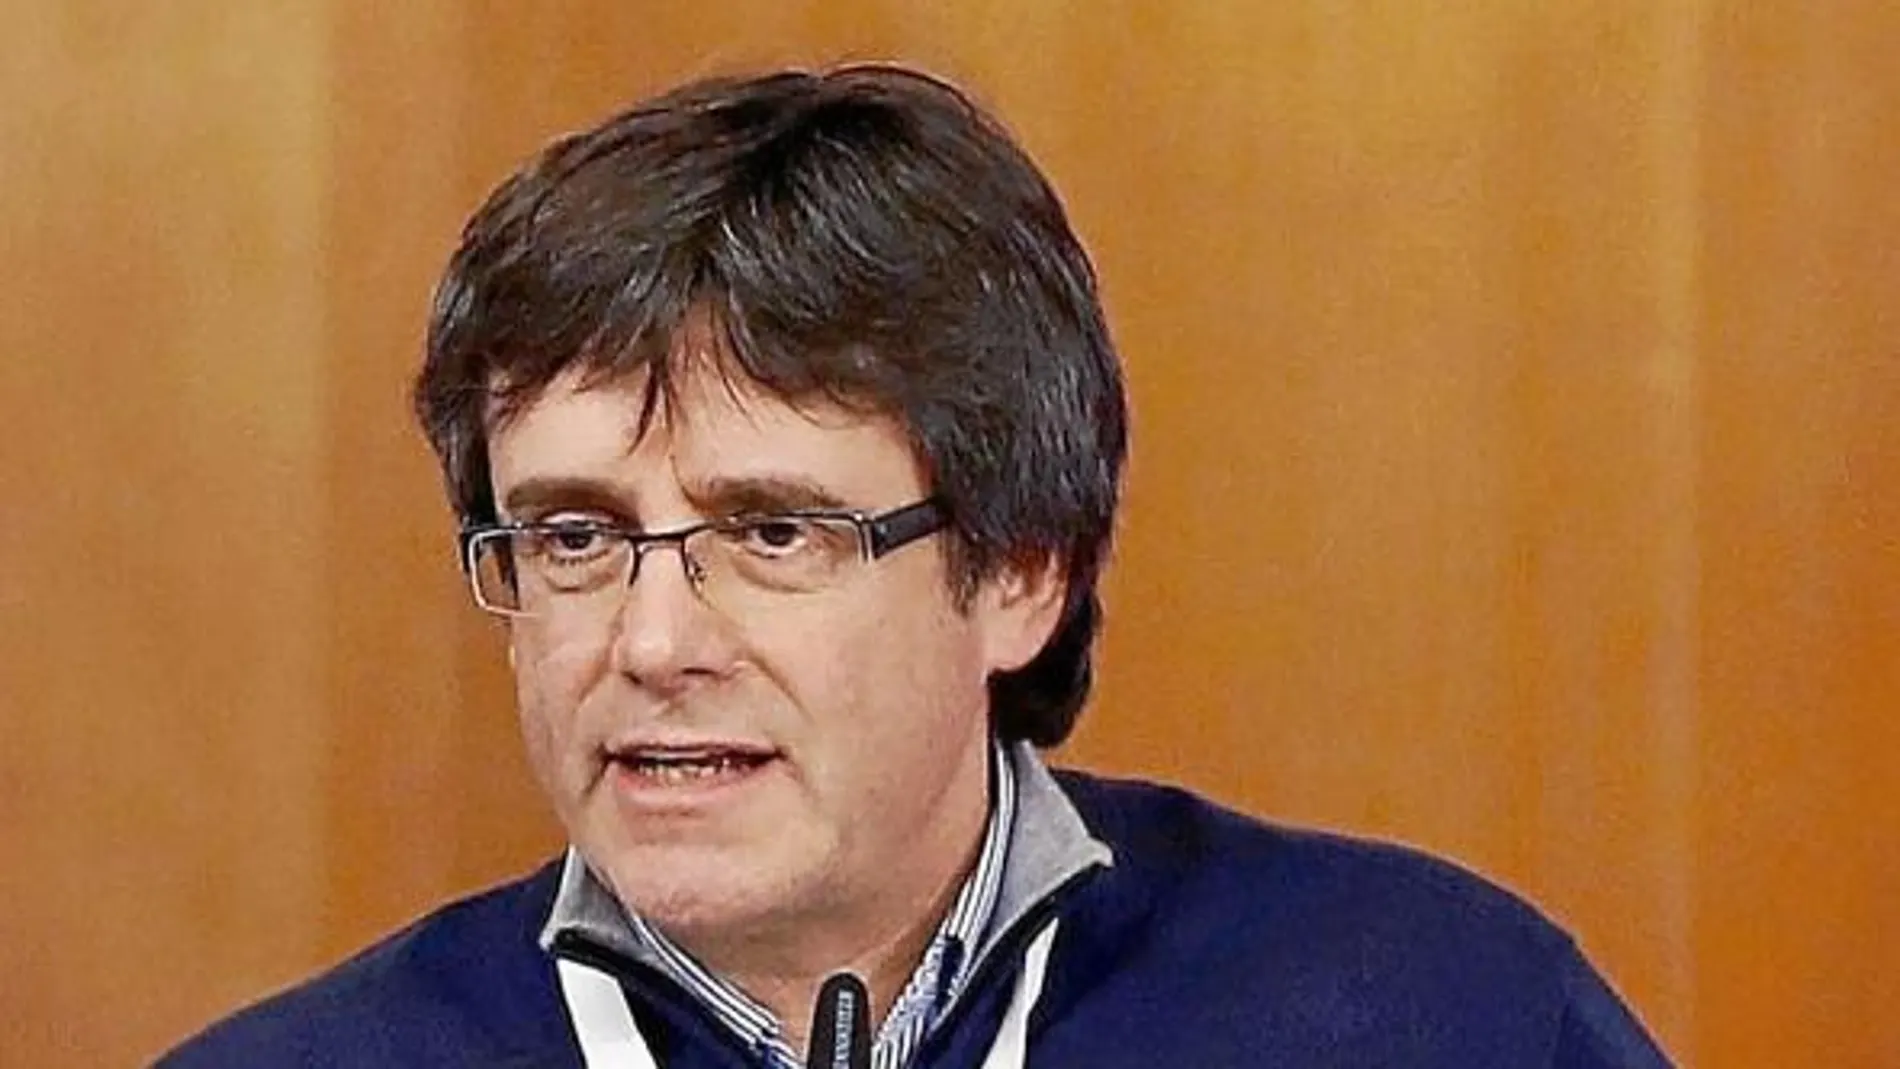 EL president de la Generalitat durante el encuentro de PDeCat